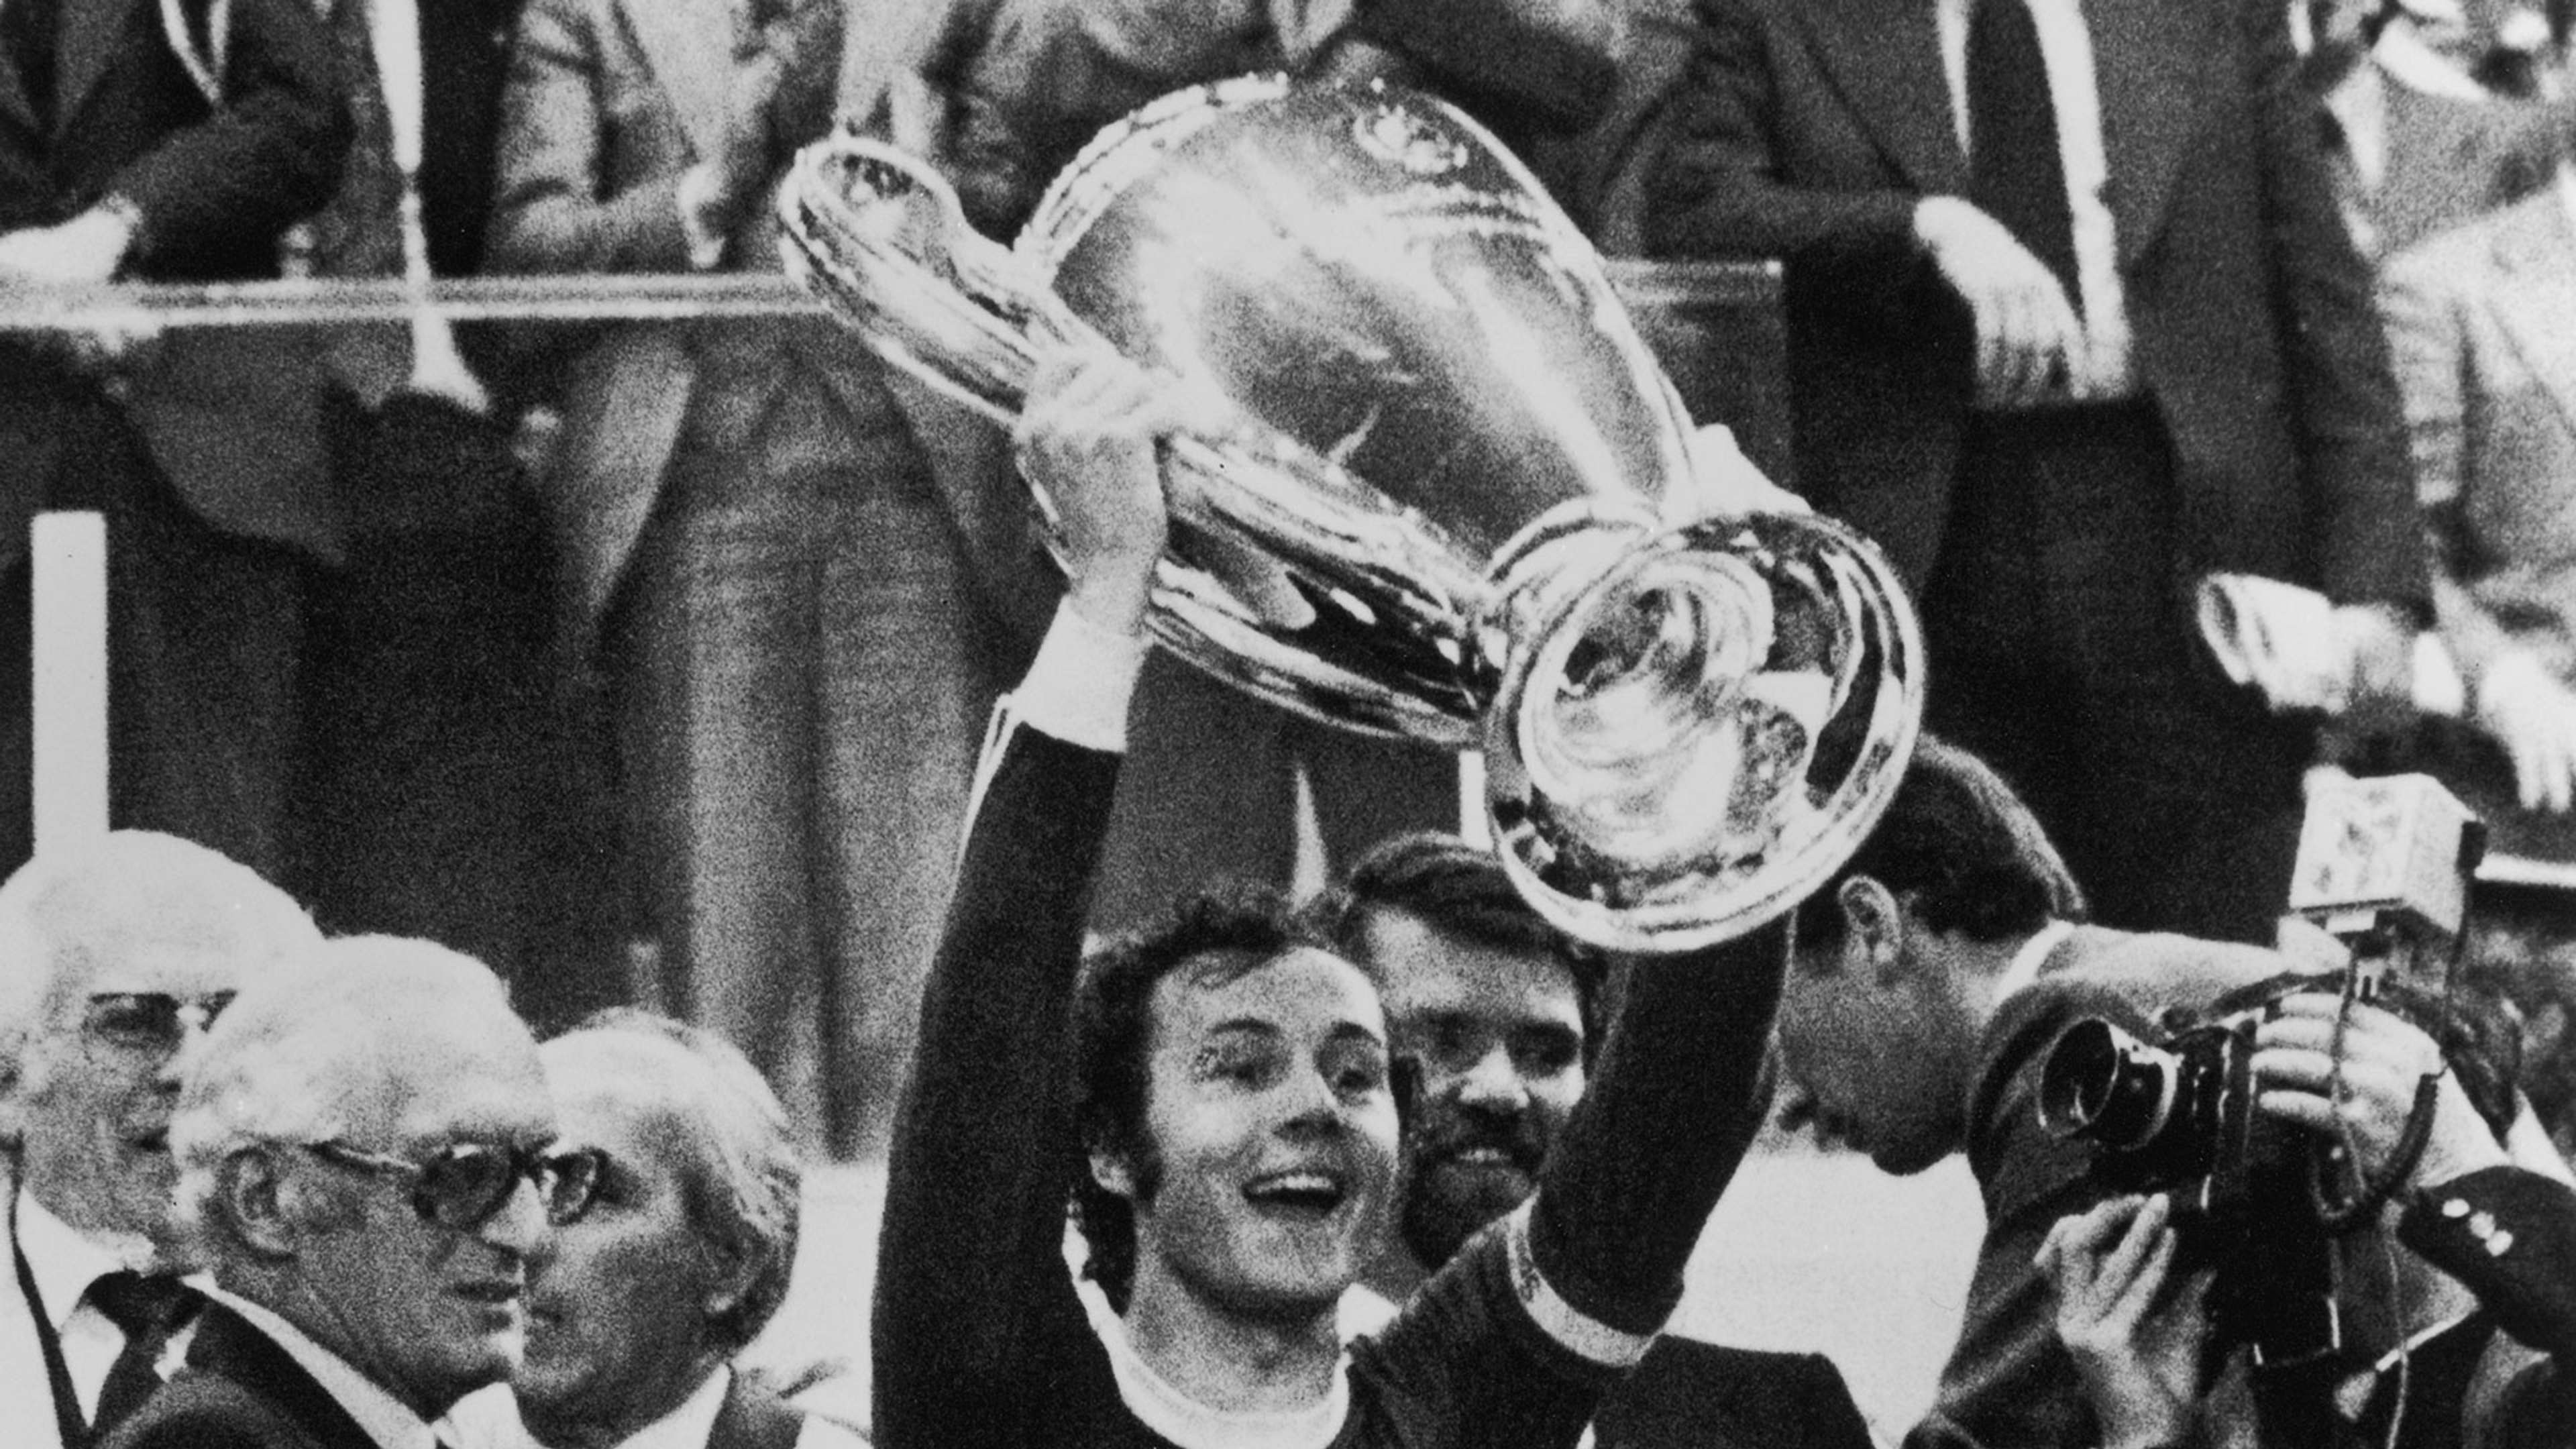 Franz Beckenbauer Bayern Munich European Cup 1975